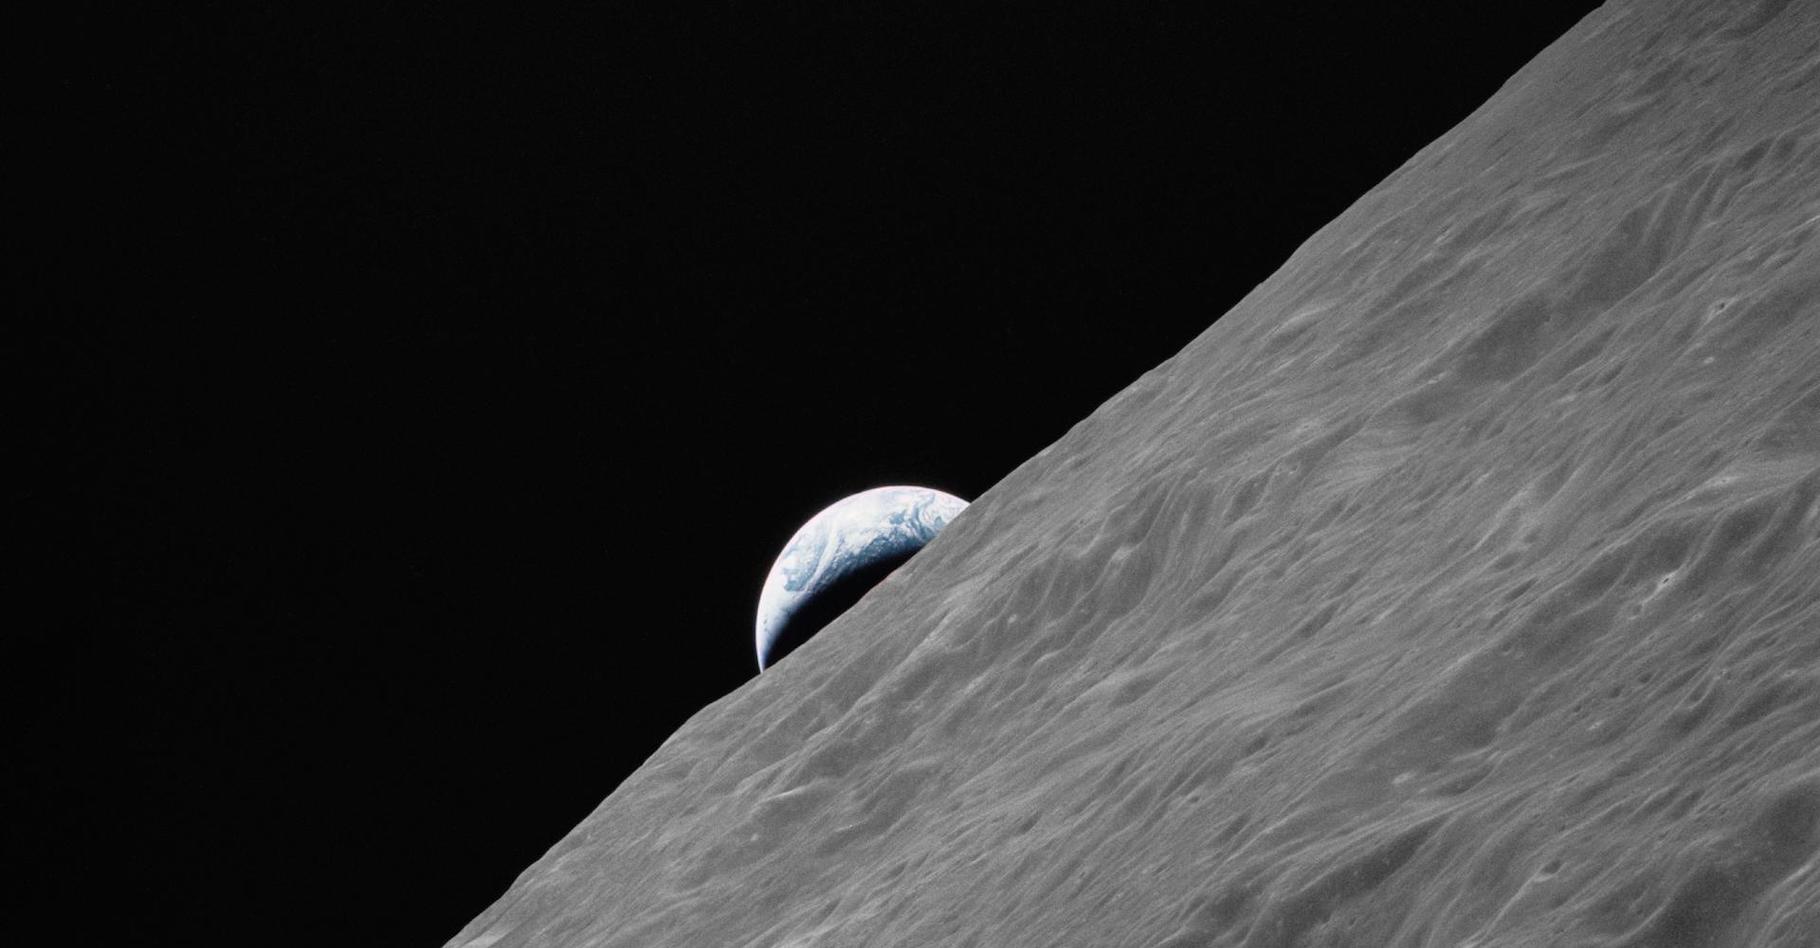 Un croissant de Terre s’élève au-dessus de l’horizon lunaire sur cette photographie prise depuis le vaisseau d'Apollo&nbsp;17. Alors que les astronautes Eugene Cernan et Harrison Schmitt sont descendus sur la Lune dans le « Challenger » pour explorer la région Taurus-Littrow, Ronald Evans est resté avec les modules de commande et de service « America » en orbite lunaire. © Nasa